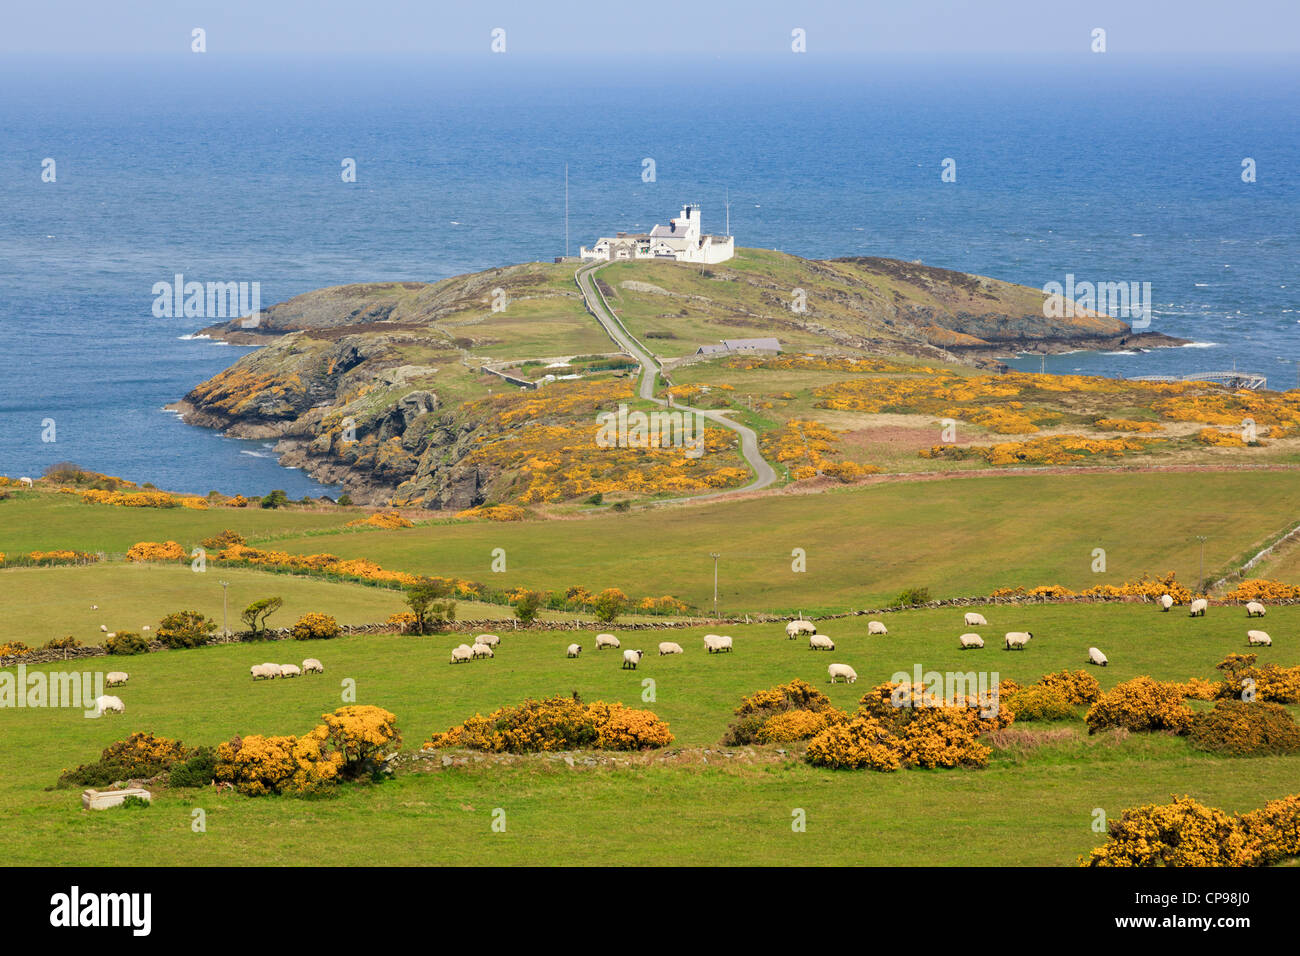 Point de vue de Lynas phare sur la côte galloise avec des moutons paissant dans les champs sur colline à Llaneilian Isle of Anglesey au nord du Pays de Galles UK en Grande-Bretagne. Banque D'Images